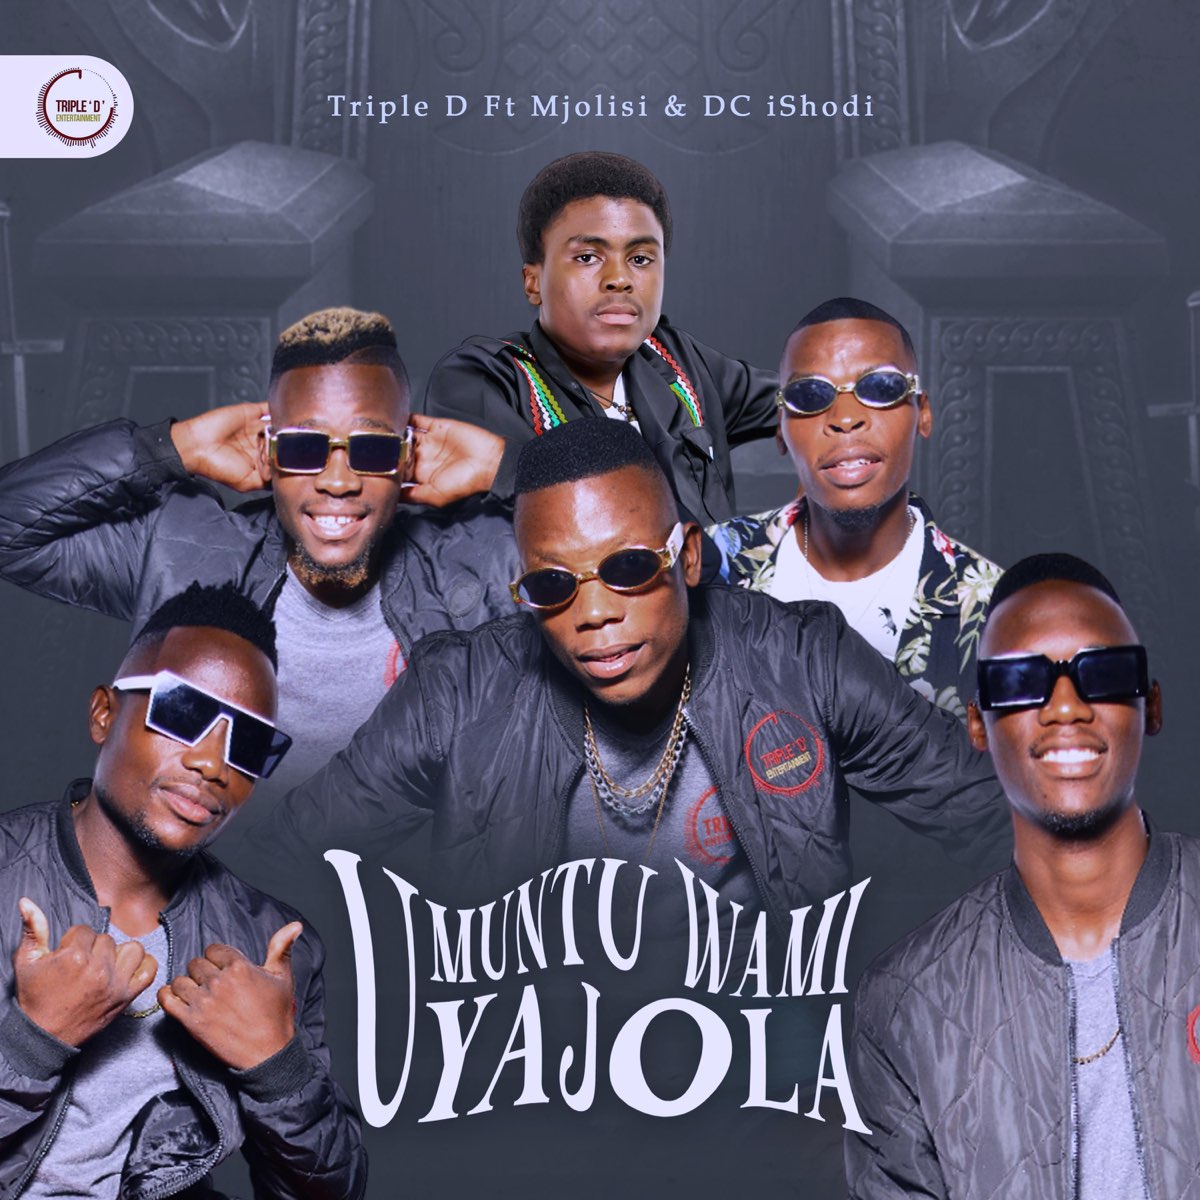 Umuntu wami uyajola (feat. Mjolisi & DC ishodi) - Single - Album